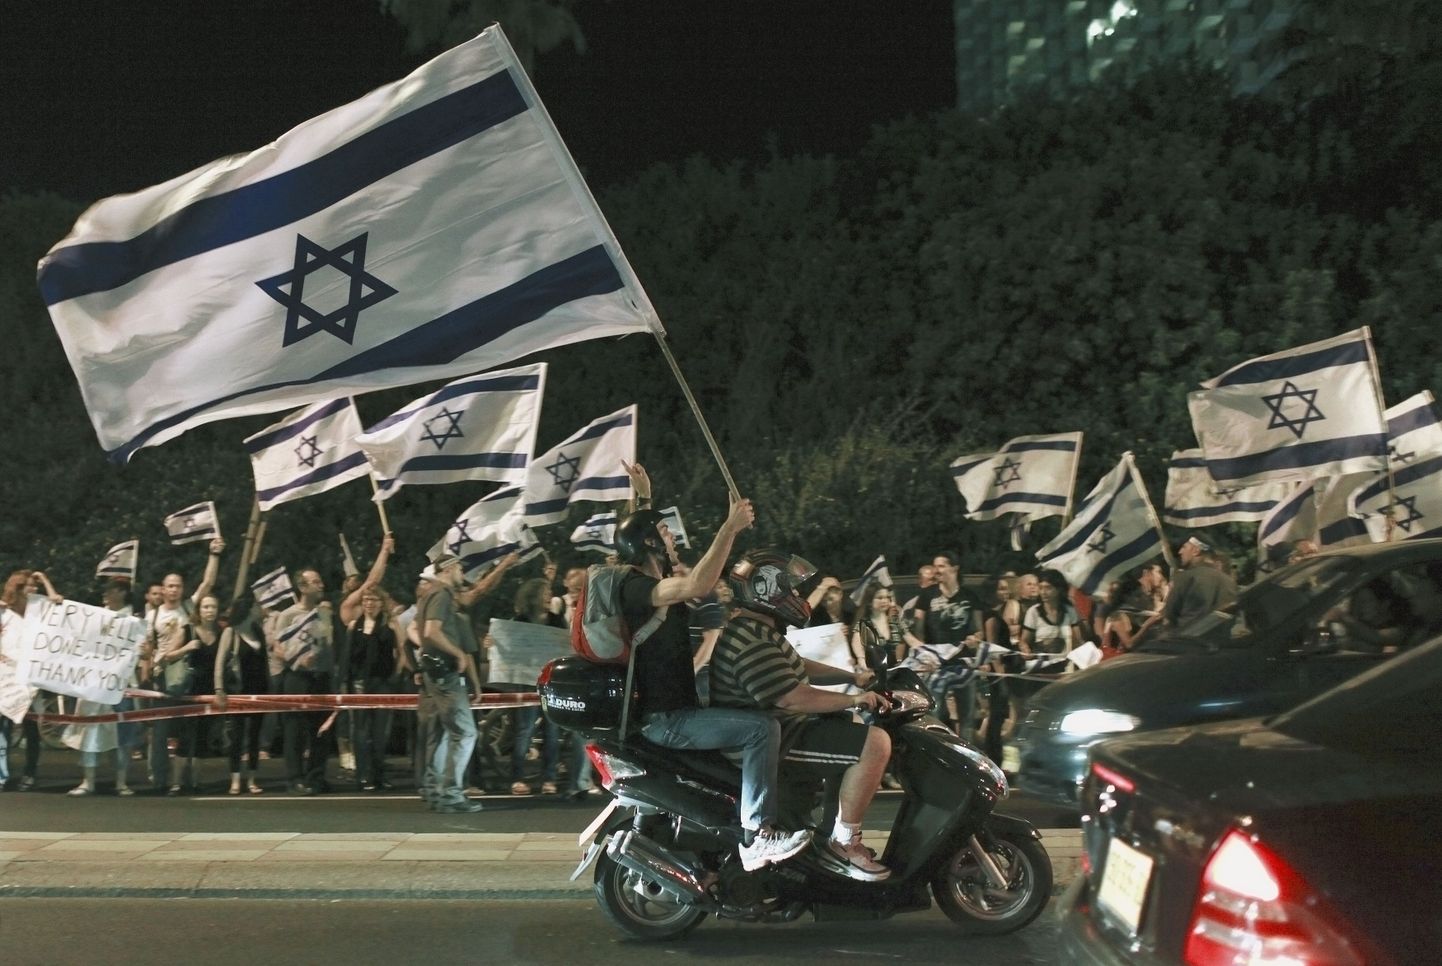 Произраильский митинг в Тель-Авиве перед турецким посольством 3 июня 2010. Что-то похожее происходило в столице Израиля вчера.